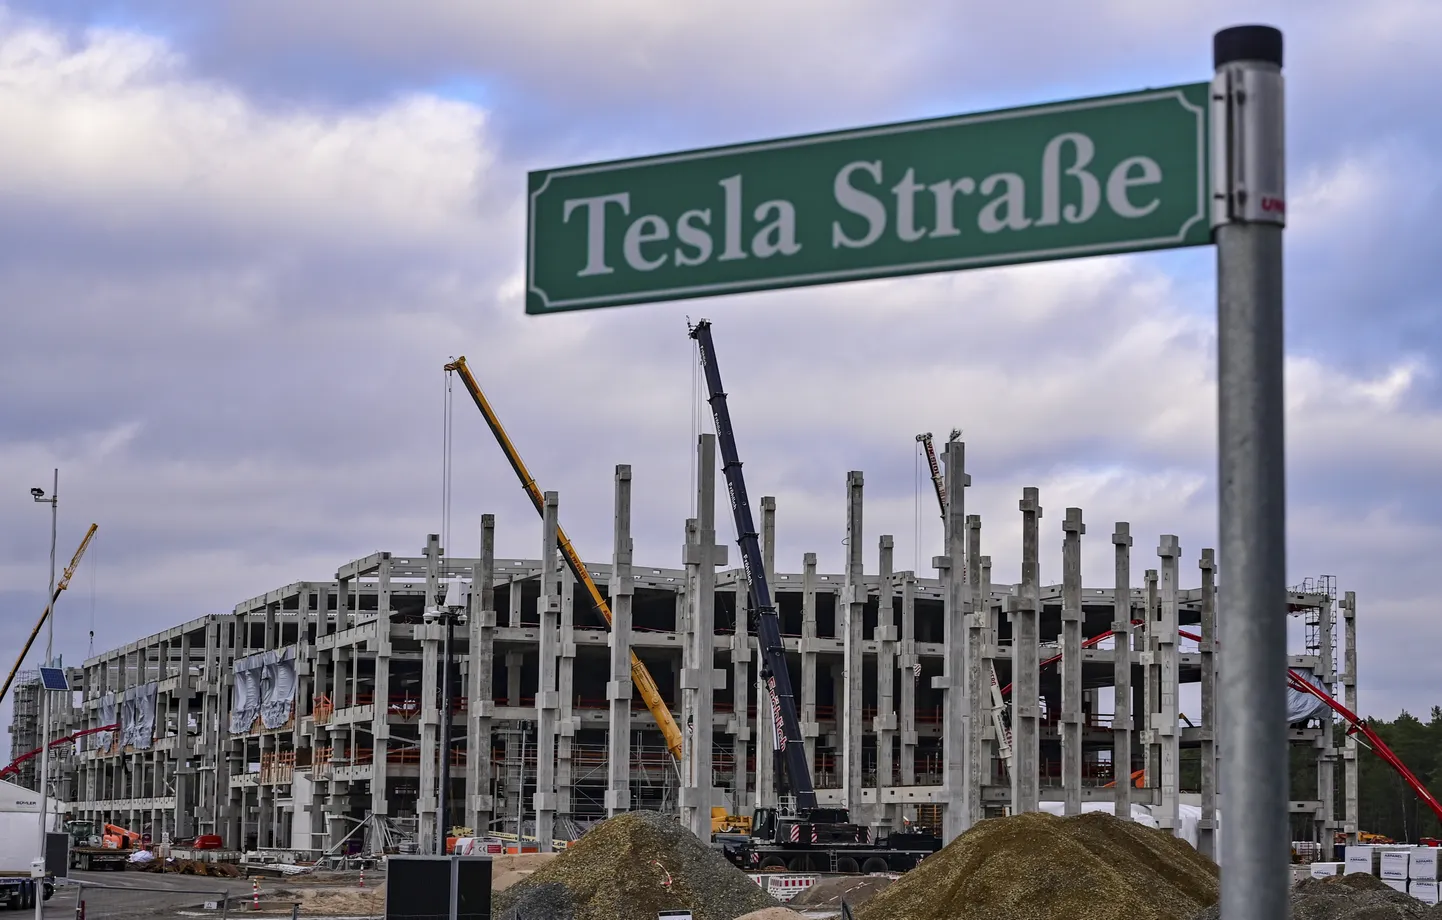 Eelmise aasta jaanuaris oli Tesla tehase ehitus veel üsna algstaadiumis. "